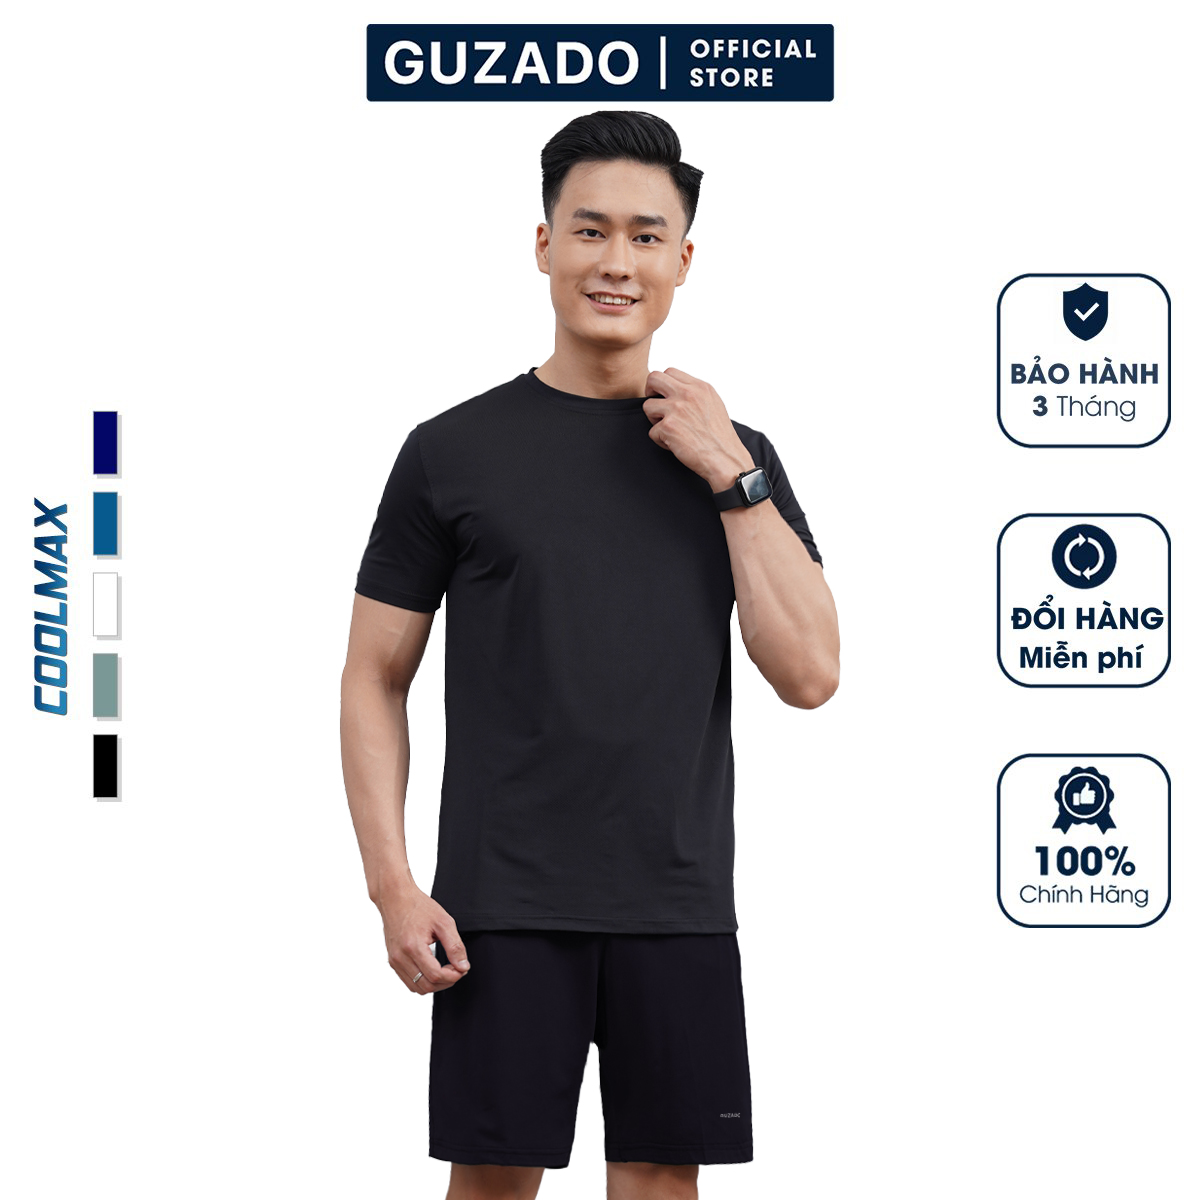 Bộ quần áo nam thể thao Guzado Chất Coolmax Thể Thao Siêu Mát,Co Giãn Vận Động Thoải Mái BCT2202